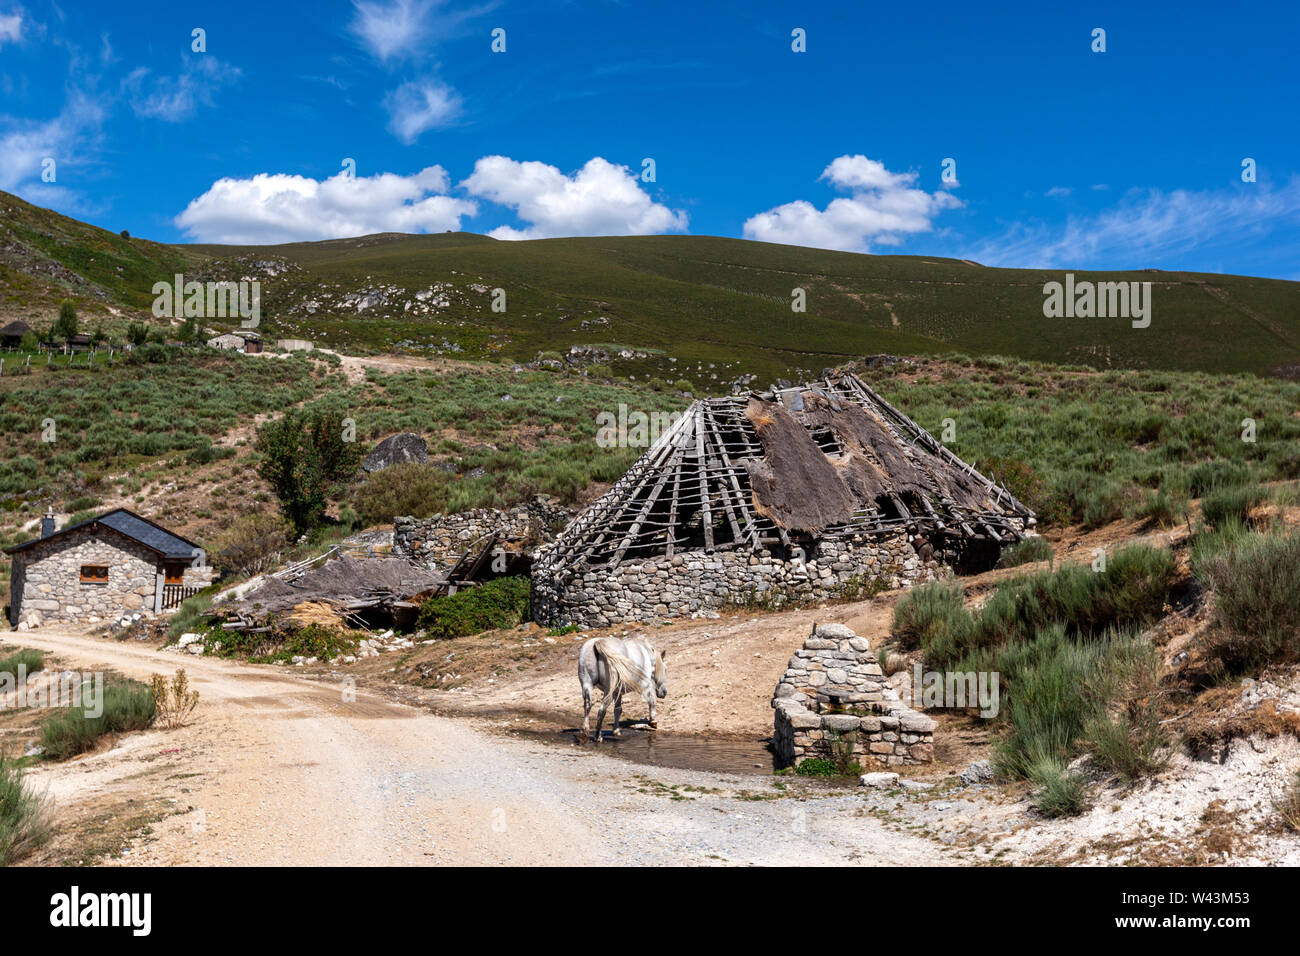 Verbleibende Palloza, traditionellen Behausung der Serra dos Ancares, verwendet als Scheune, Landschaft in der Nähe von Campo del Agua, Leon Provinz Kastilien, Spanien Stockfoto